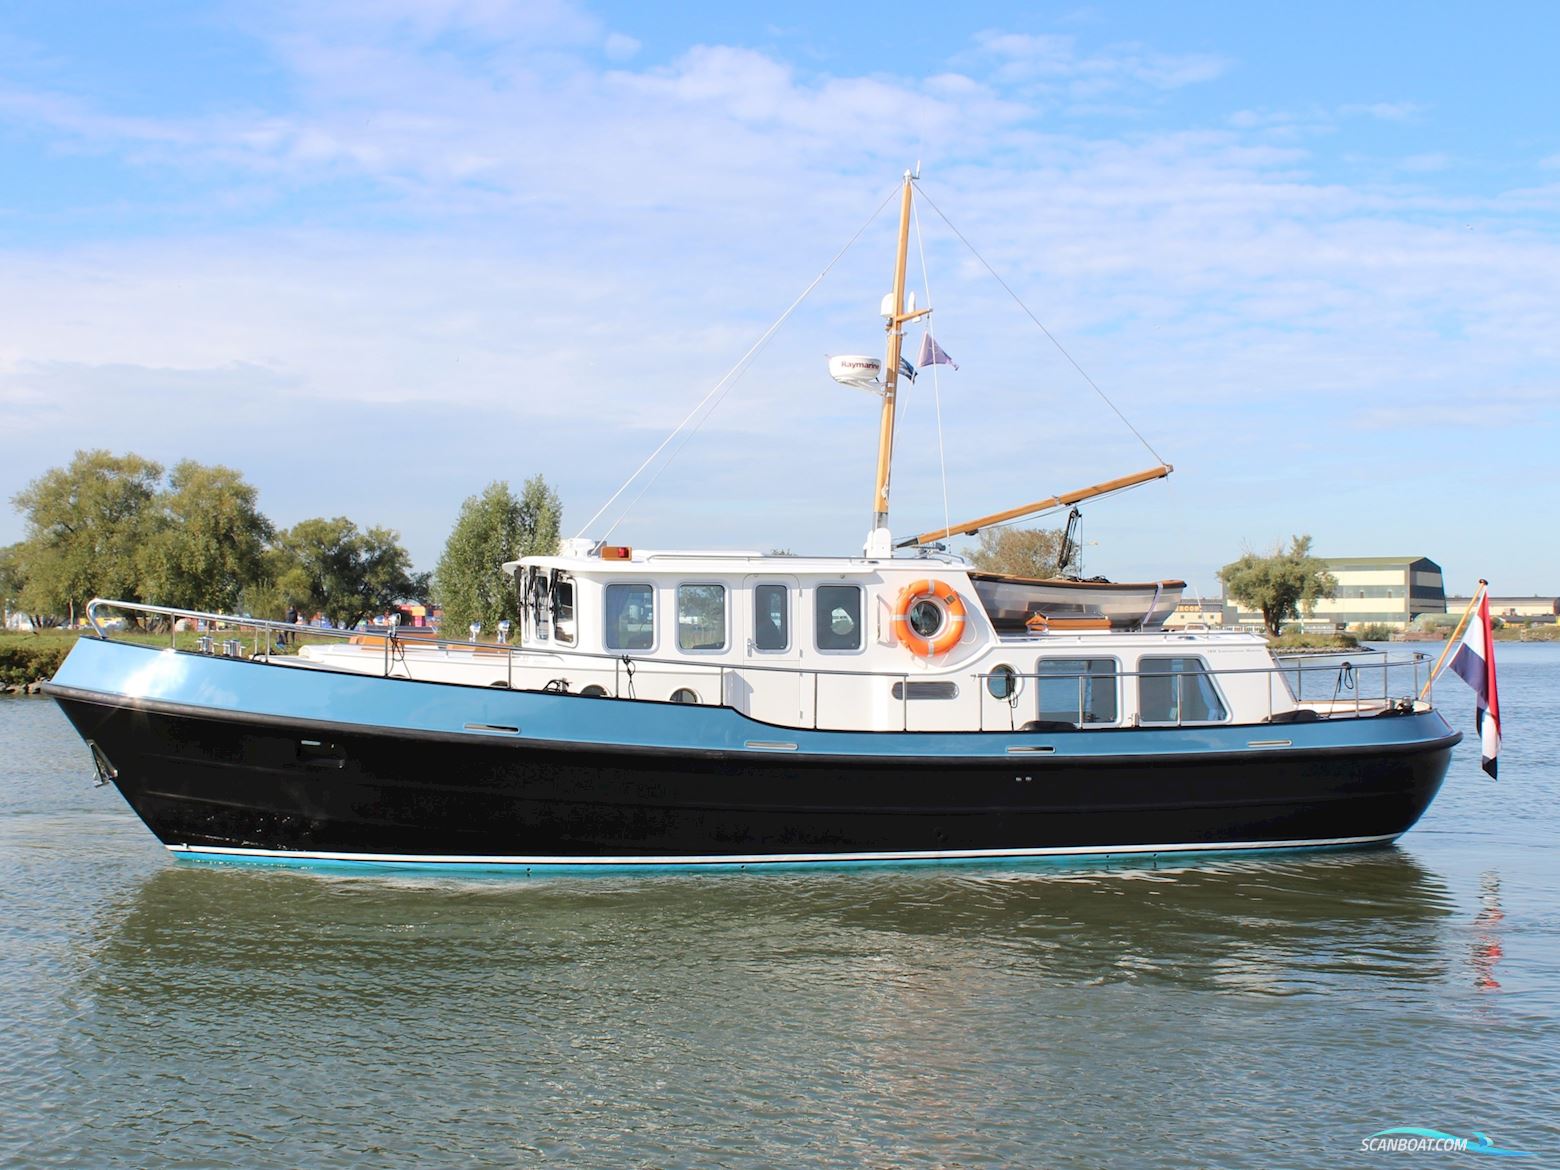 Stevenvlet 1440 RS Motor boat 2014, with John Deere engine, The Netherlands